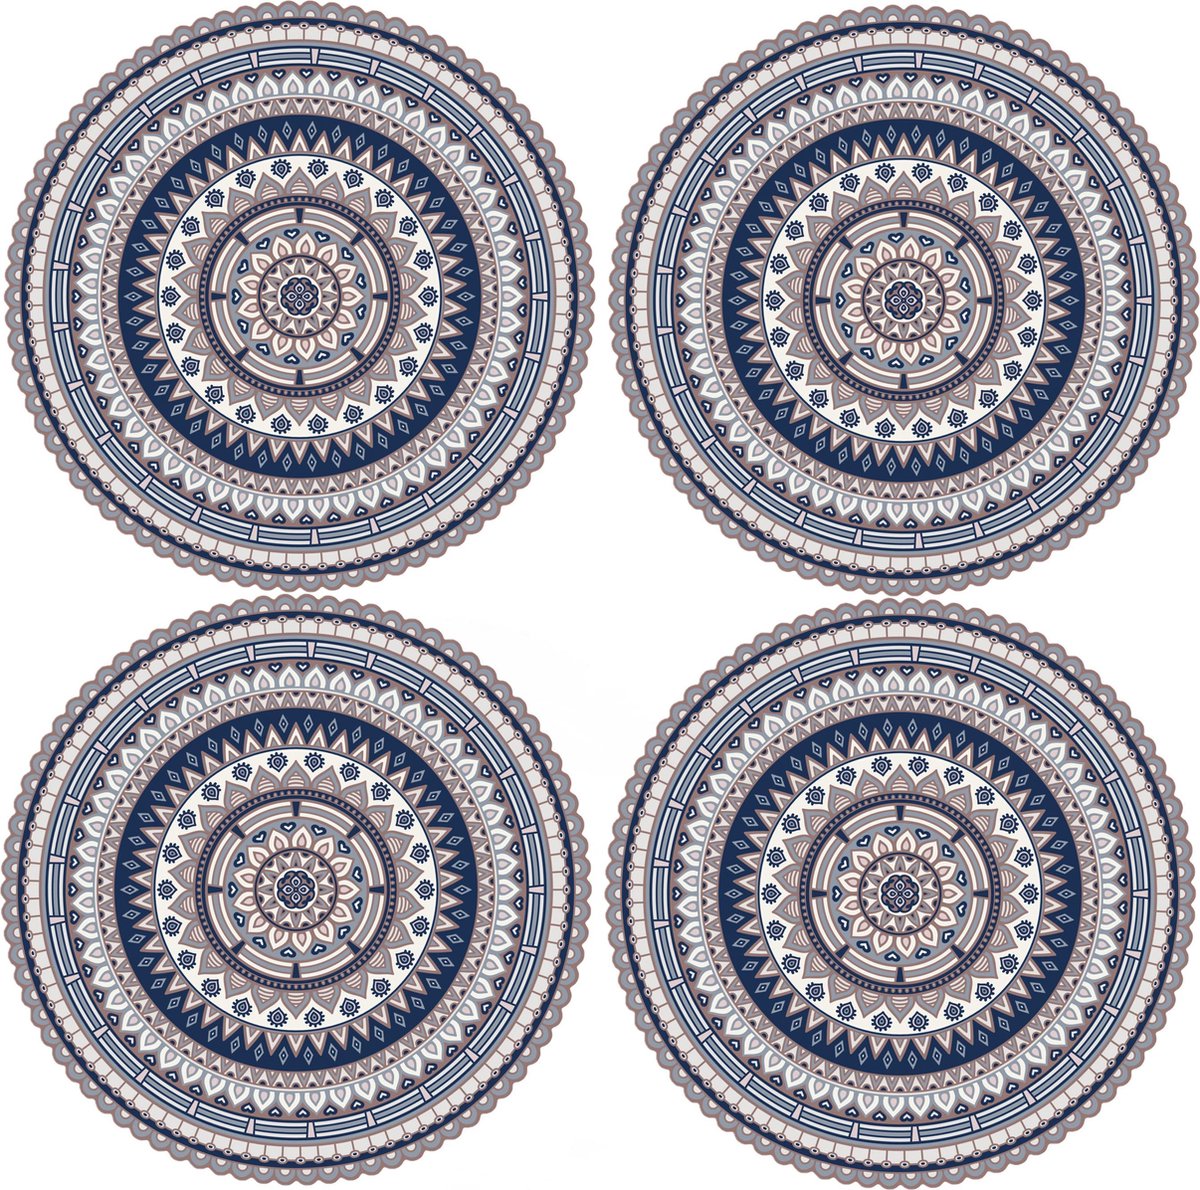 8x stuks Ibiza stijl ronde blauwe placemats van vinyl D38 cm - Antislip/waterafstotend - Stevige top kwaliteit